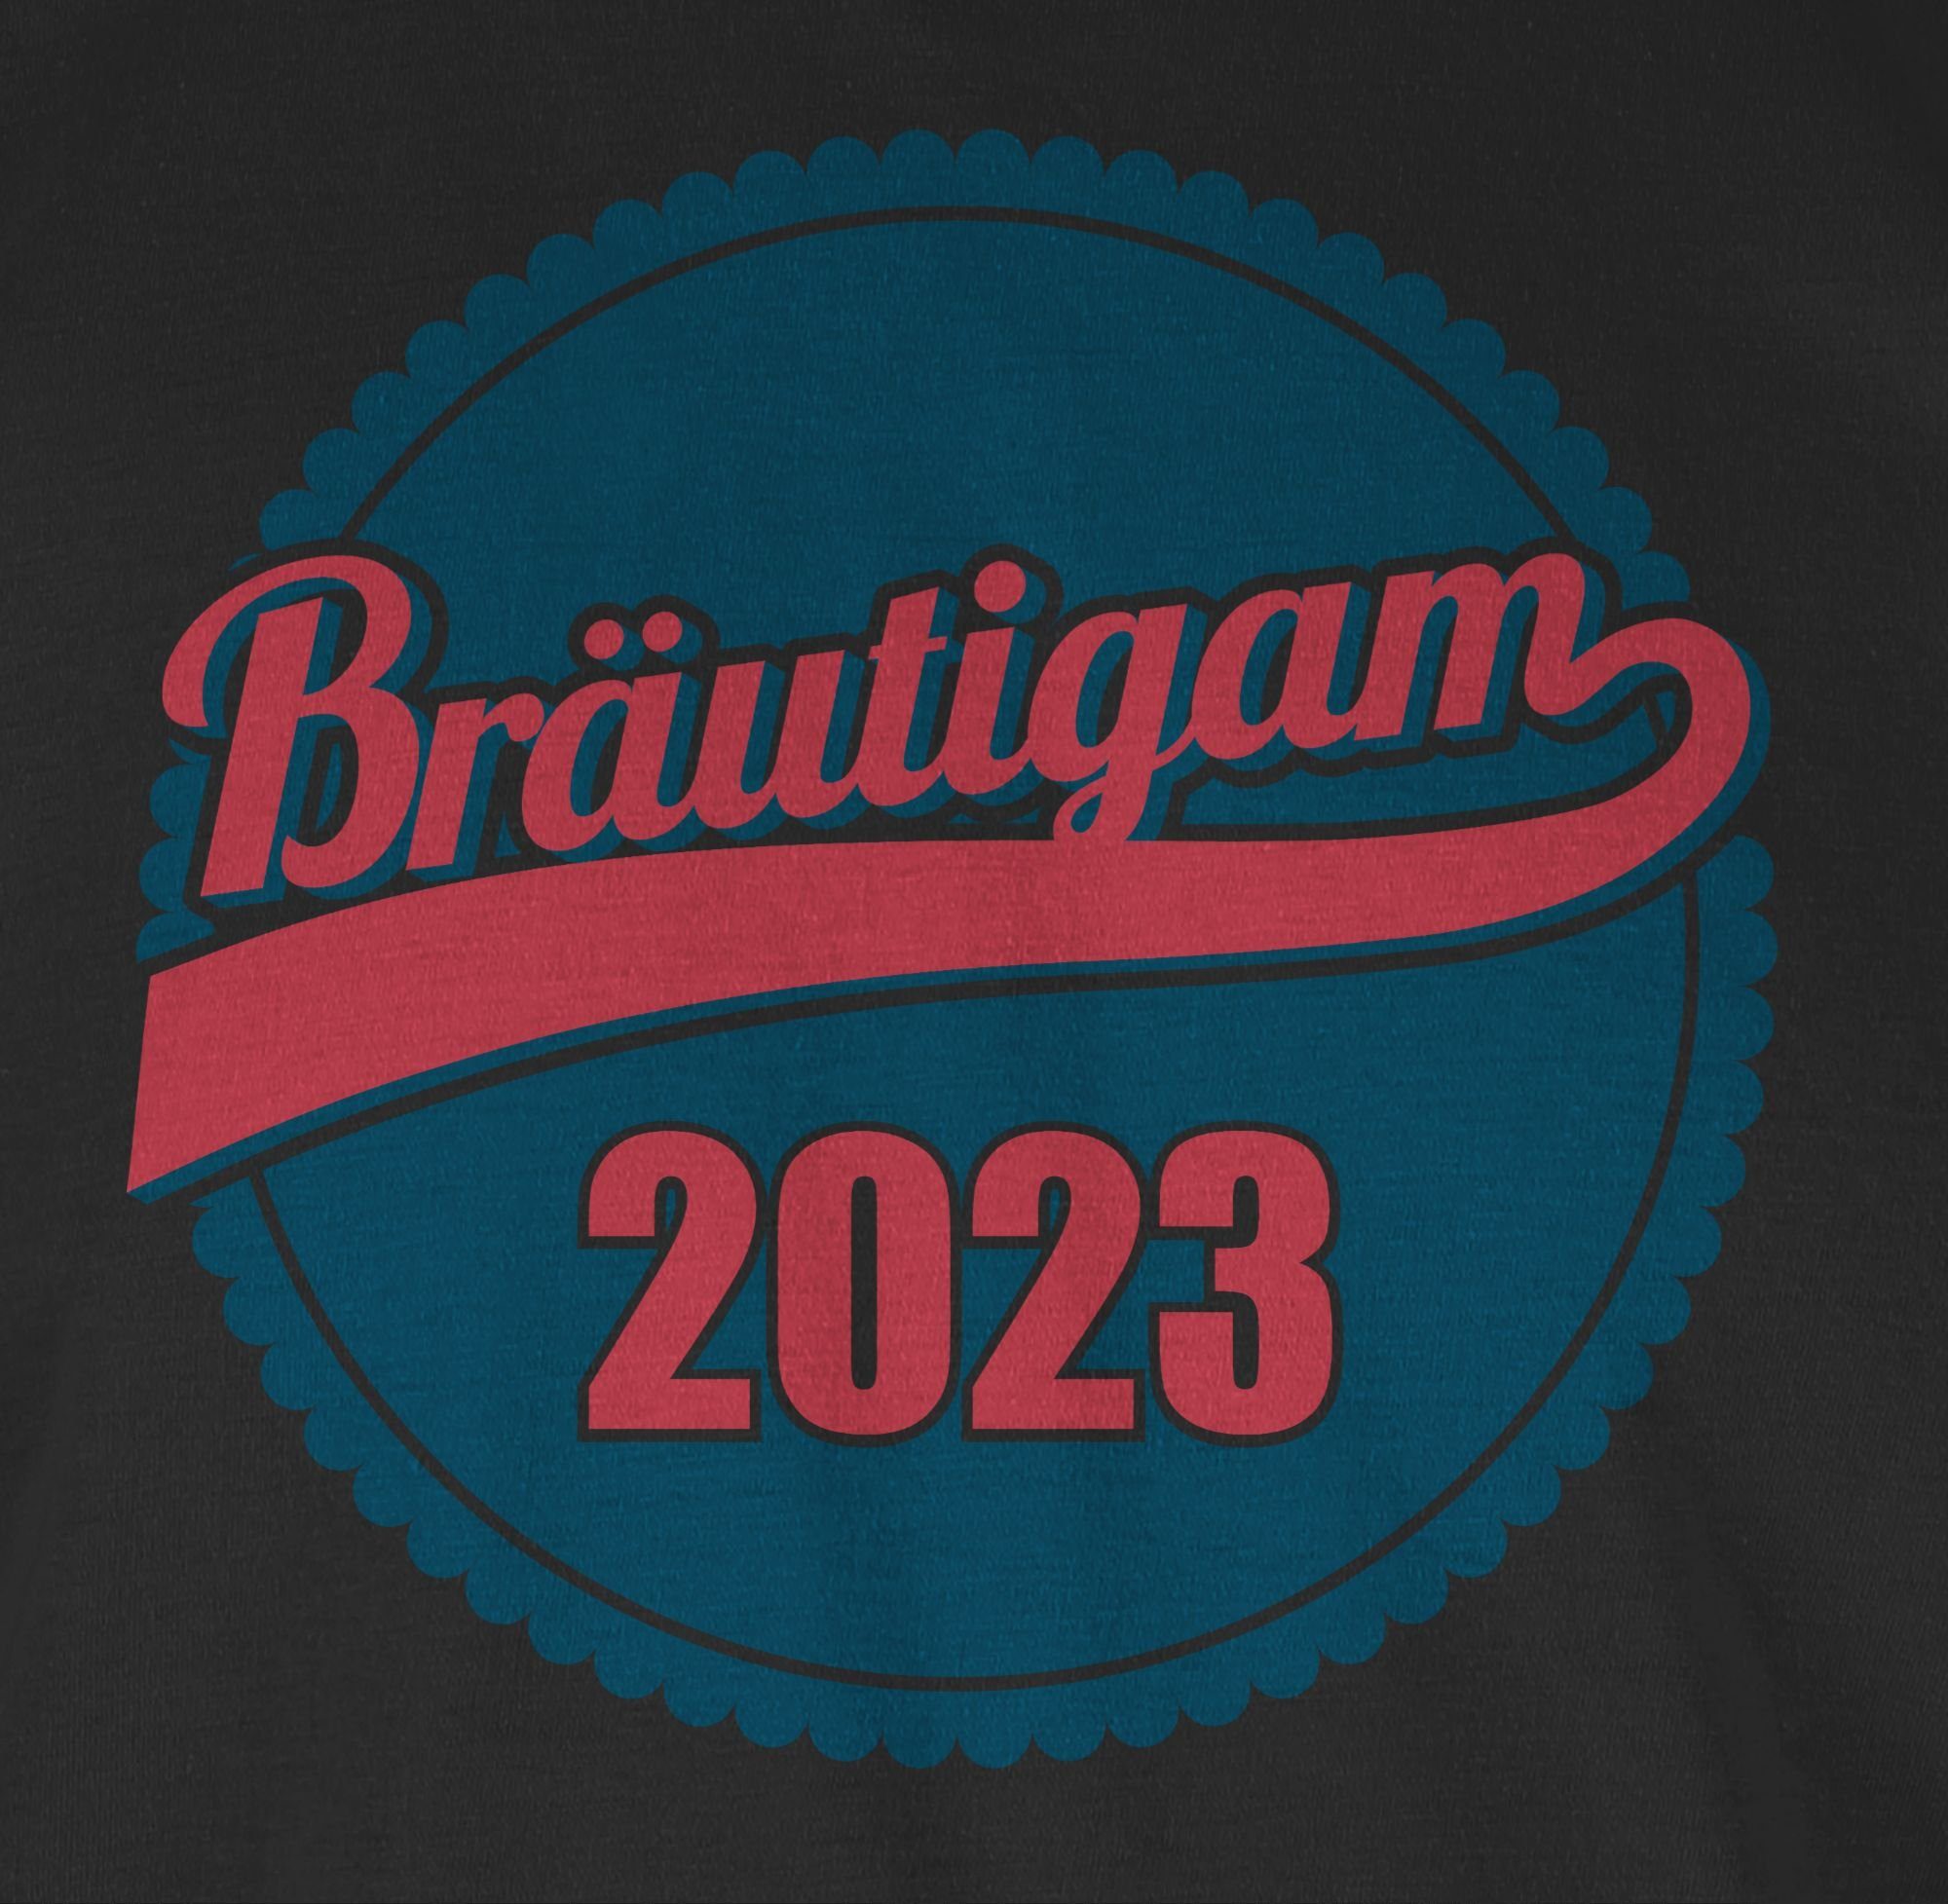 Schwarz Männer Bräutigam T-Shirt JGA Shirtracer 2 2023